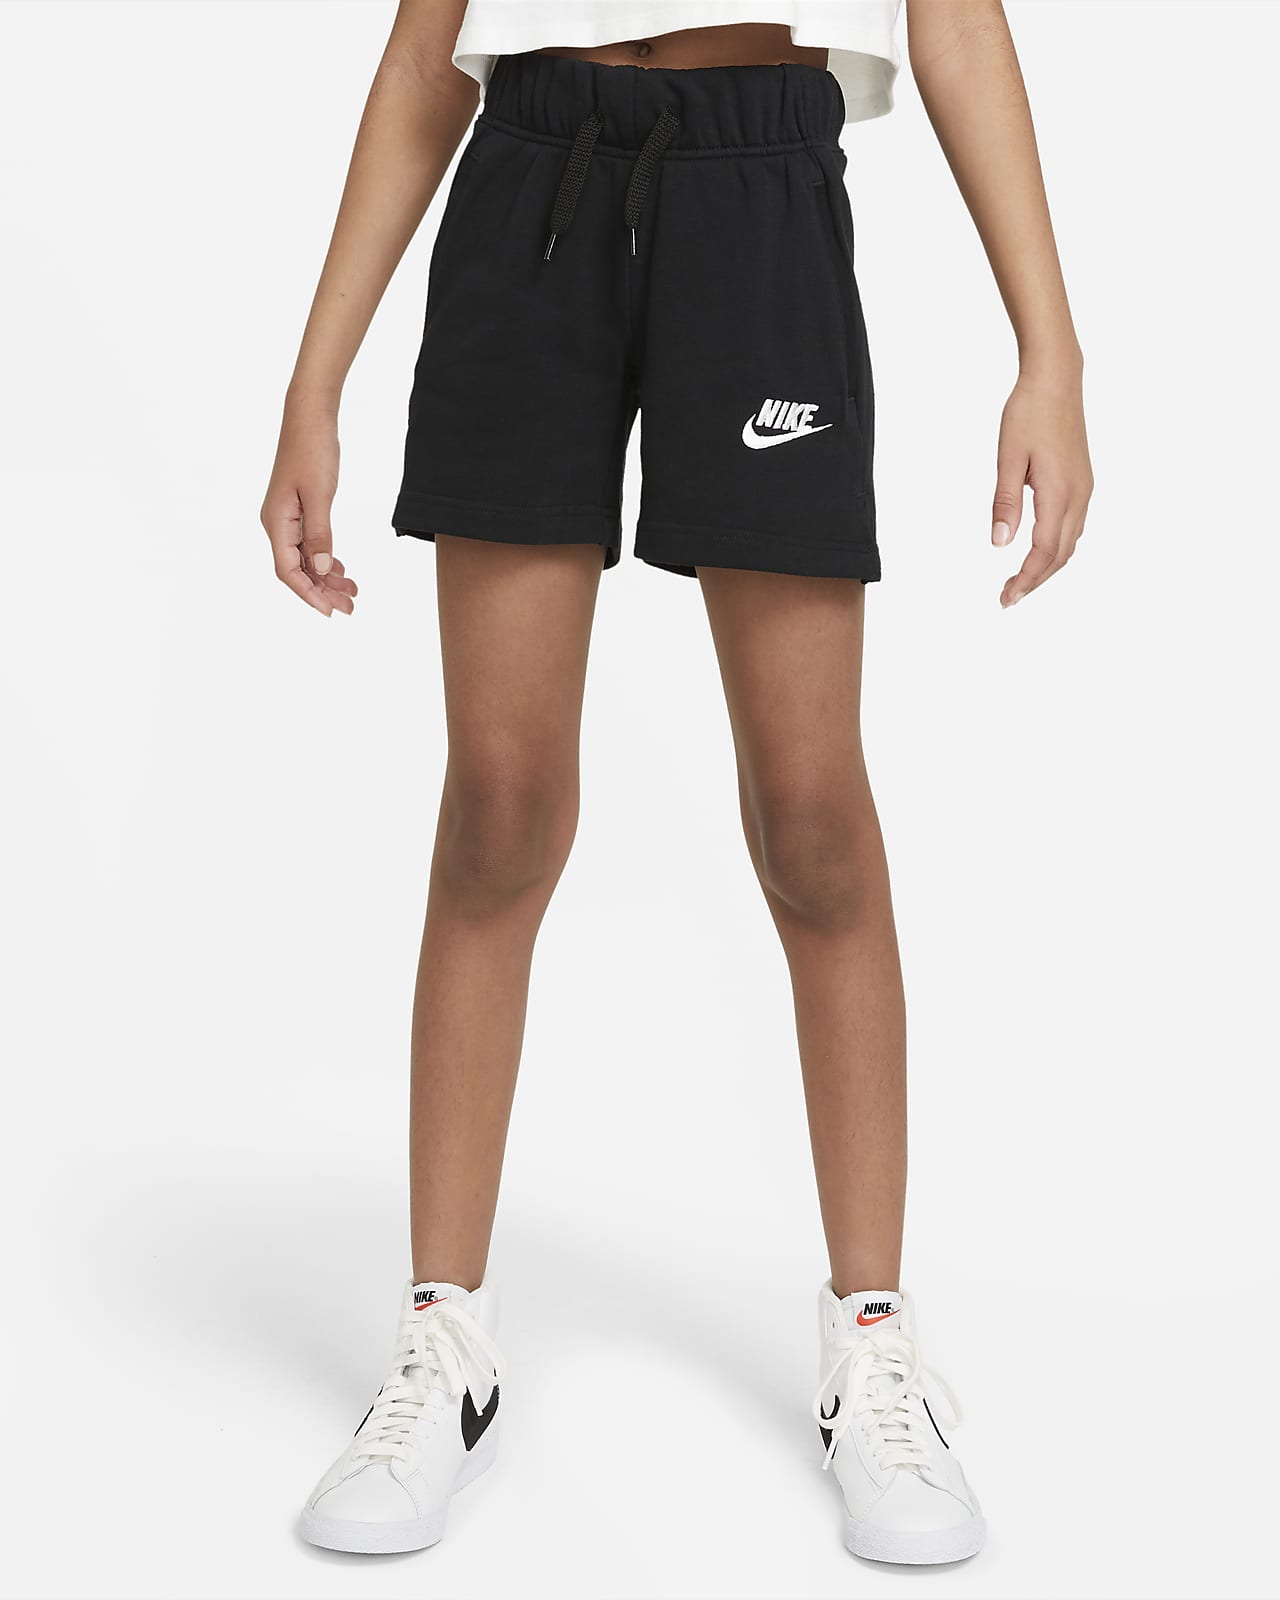 Men's shorts - size 4XL | FLEXDOG